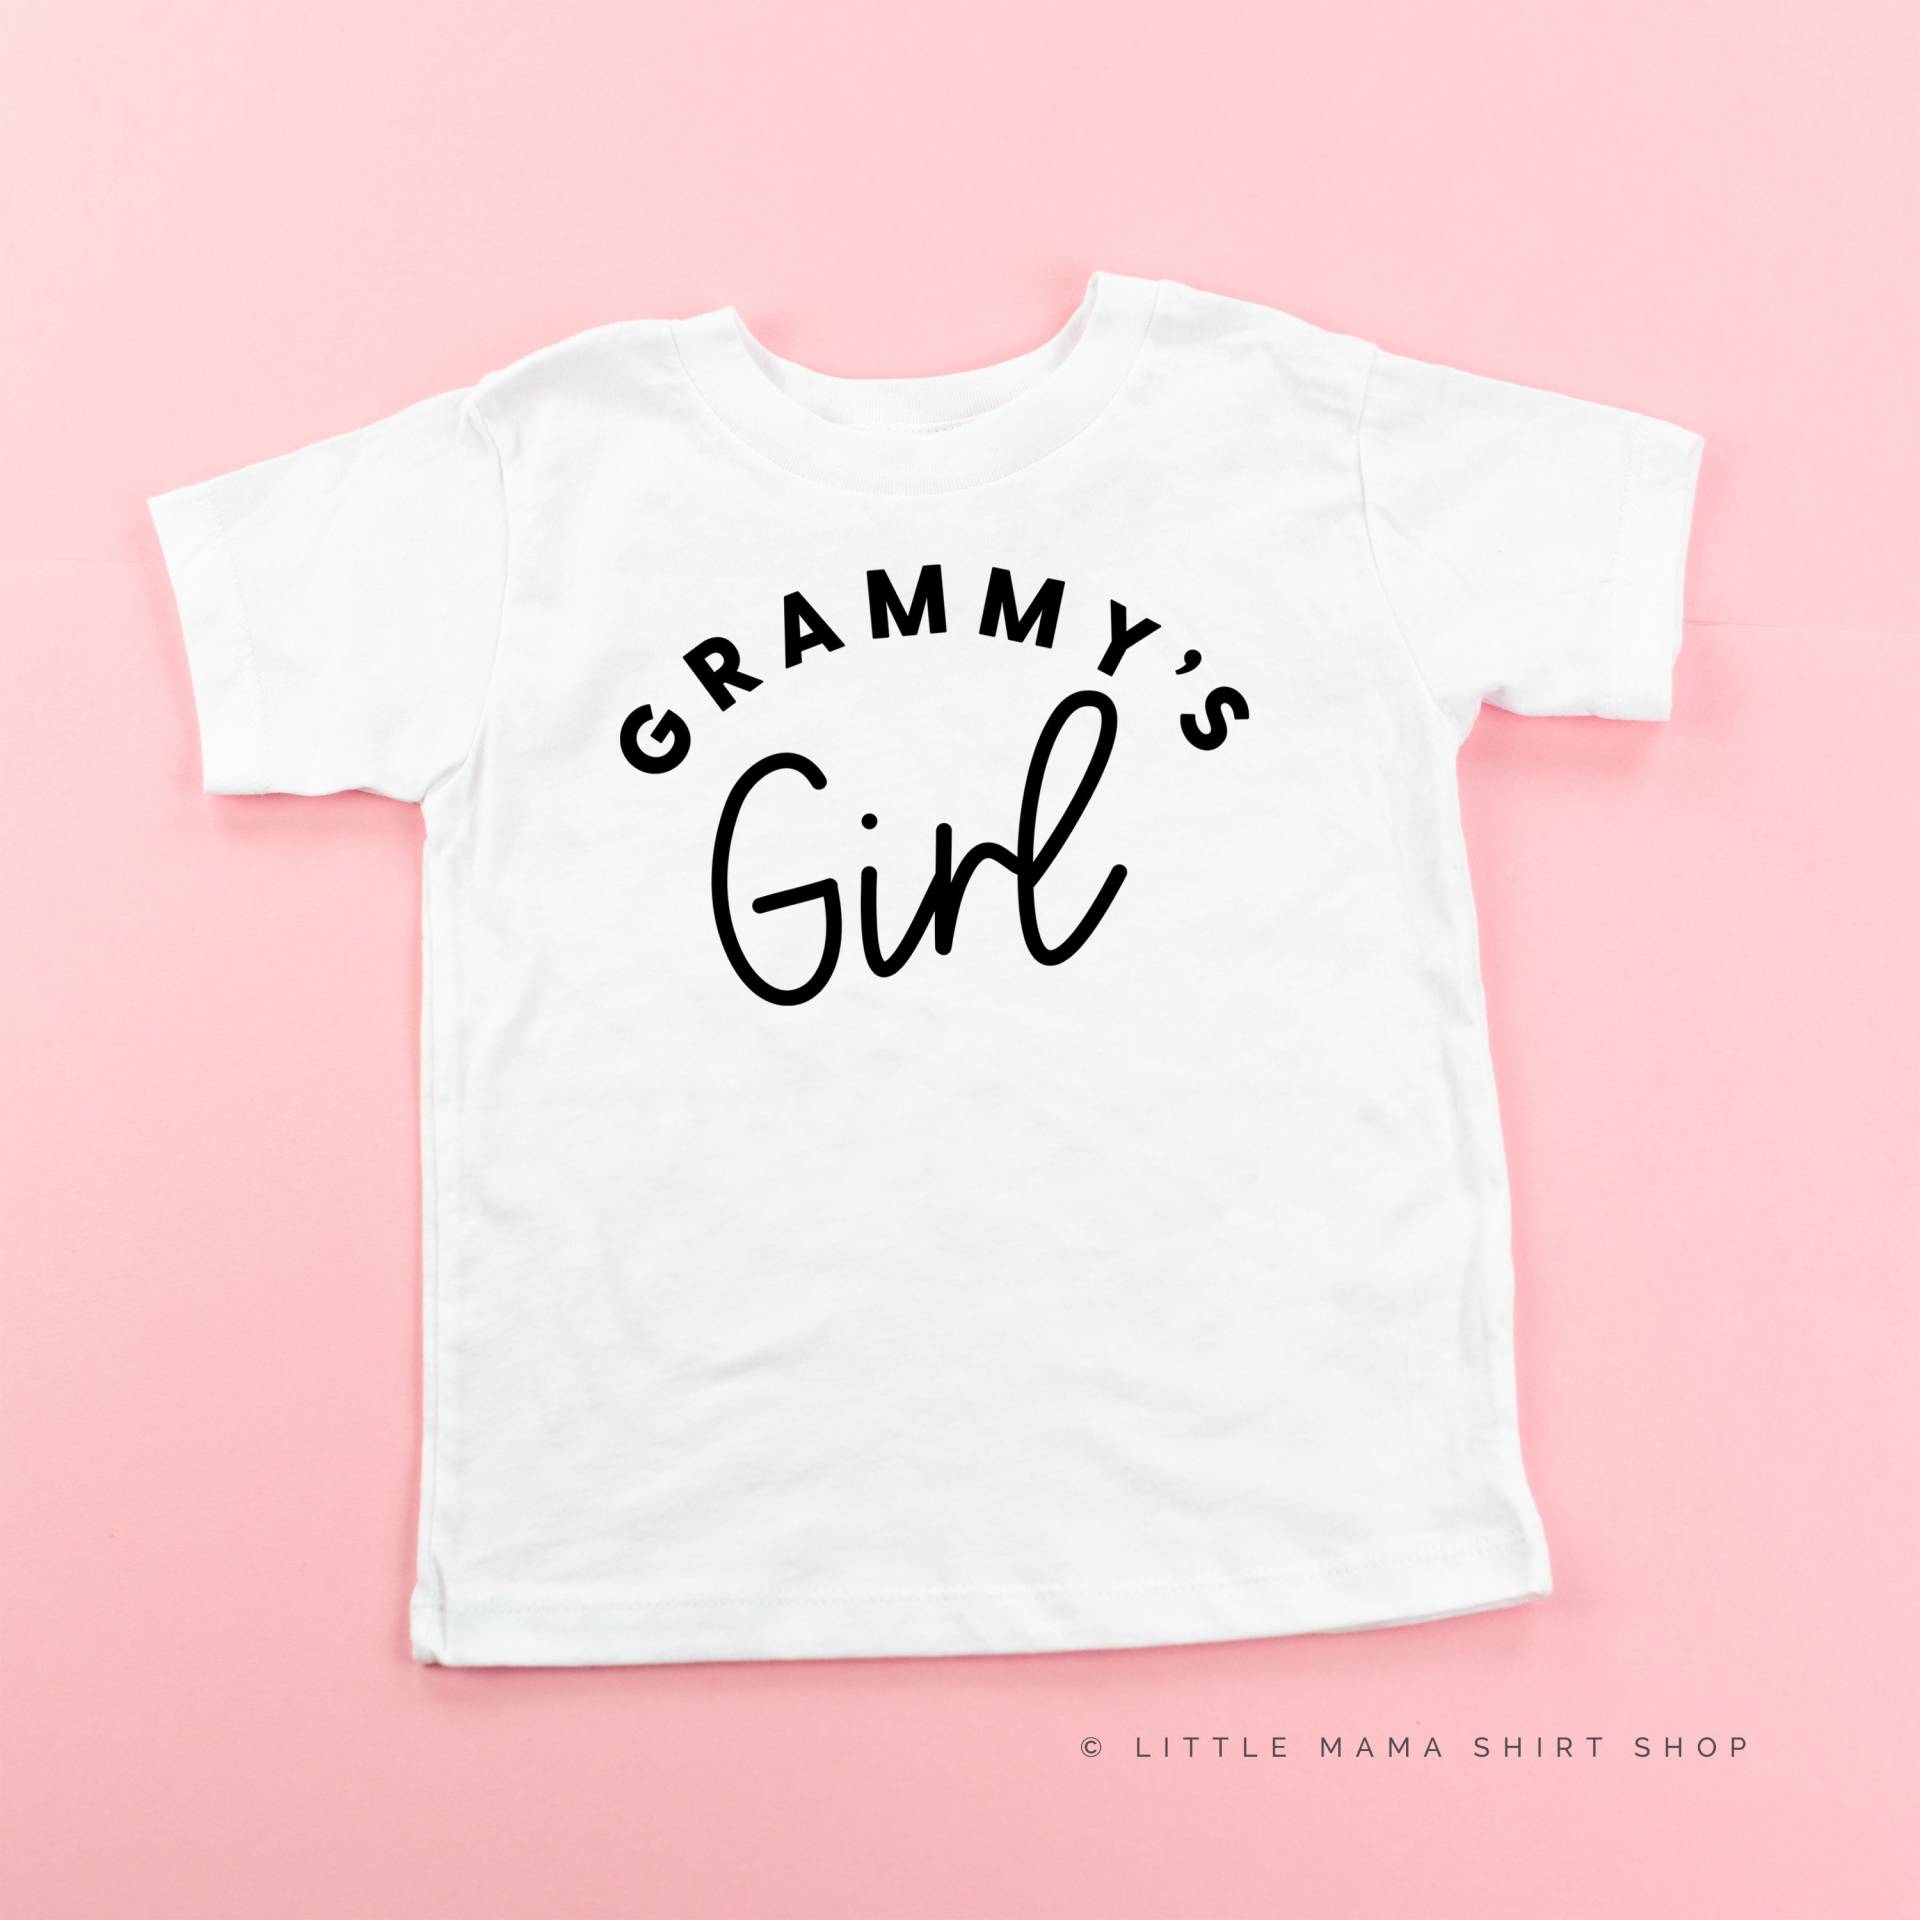 Grammy Es Girl | Kleinkind Mädchen Shirt Shirts Für Kleine Gigi T-Shirts Baby Omas von LittleMamaShirtShop